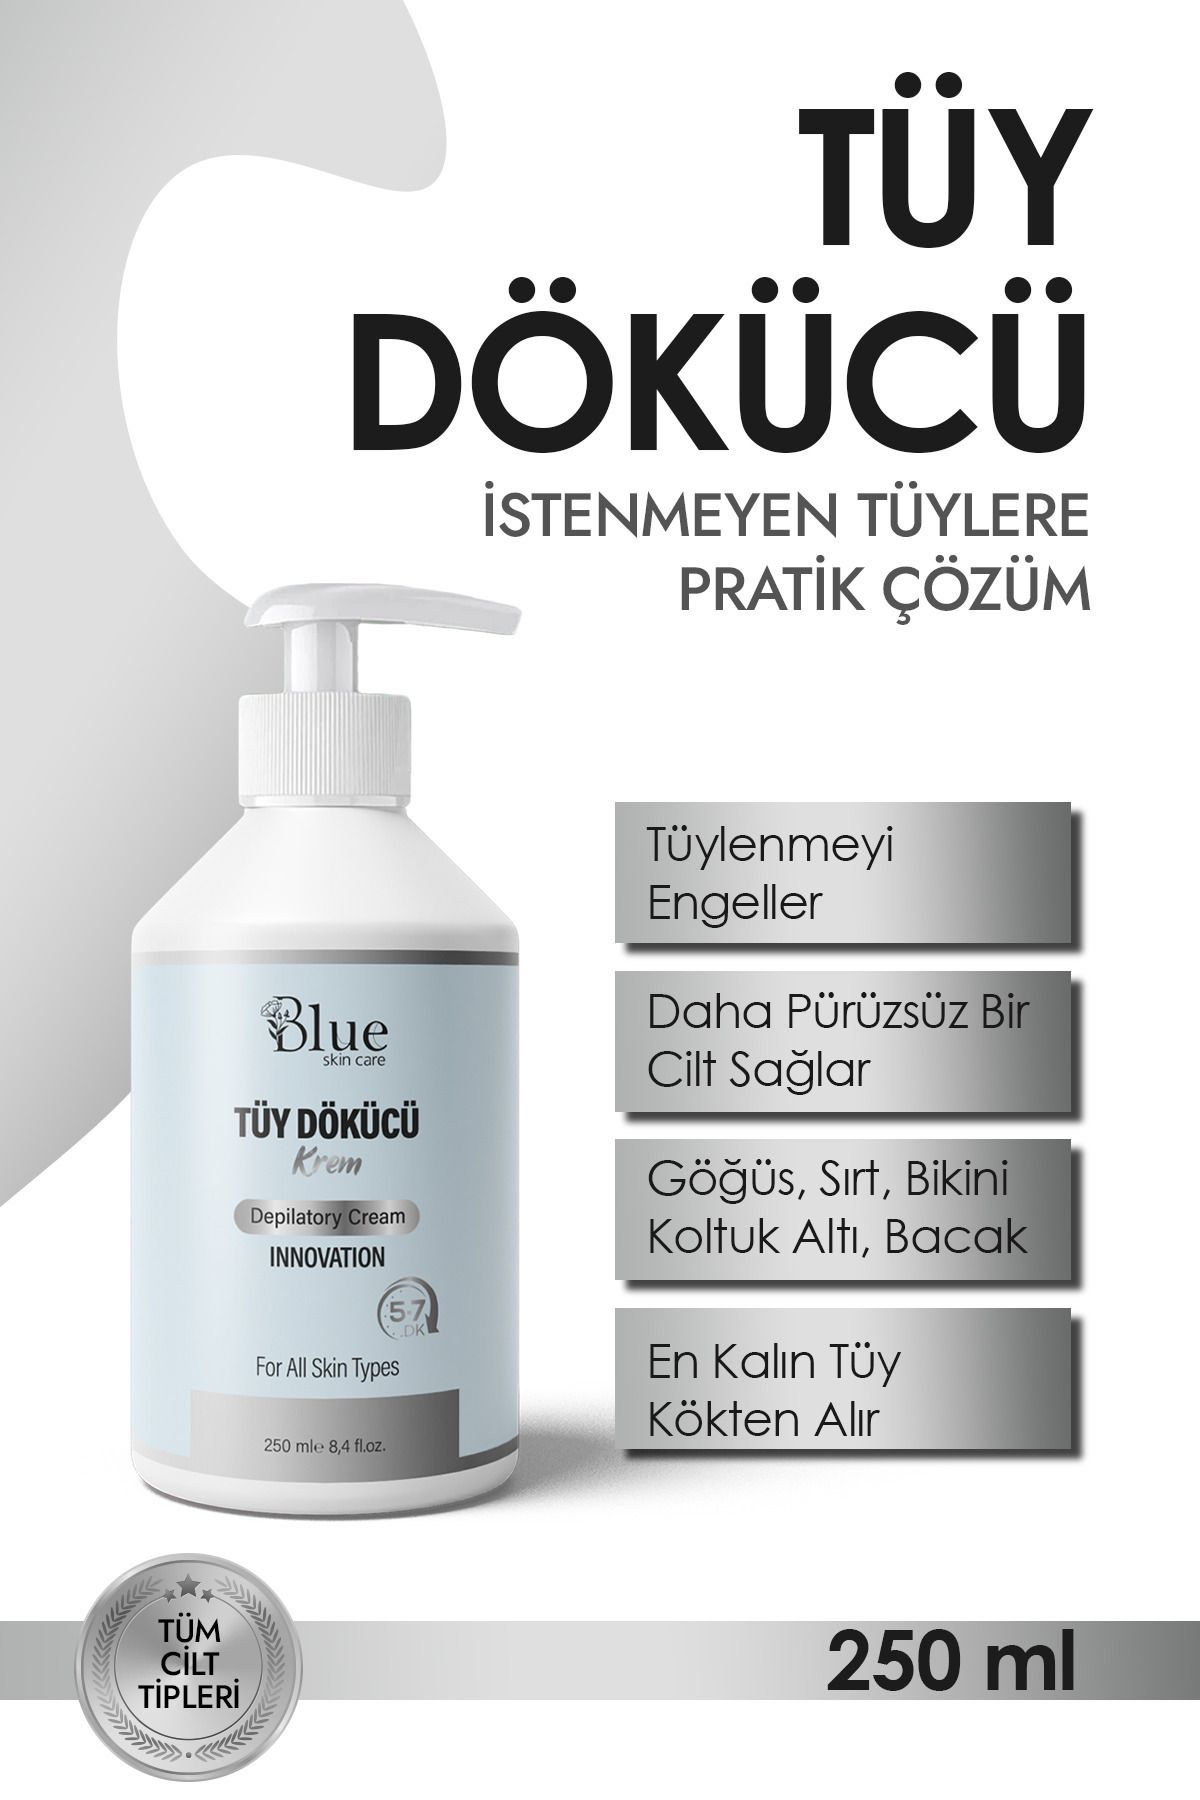 BLUE Skin Care Tüy Dökücü Ve Tüy Azaltıcı Tüy Alma Krem Tüm Cilt Tipleri Için Epilasyon ( Özel Formül 250 ml )